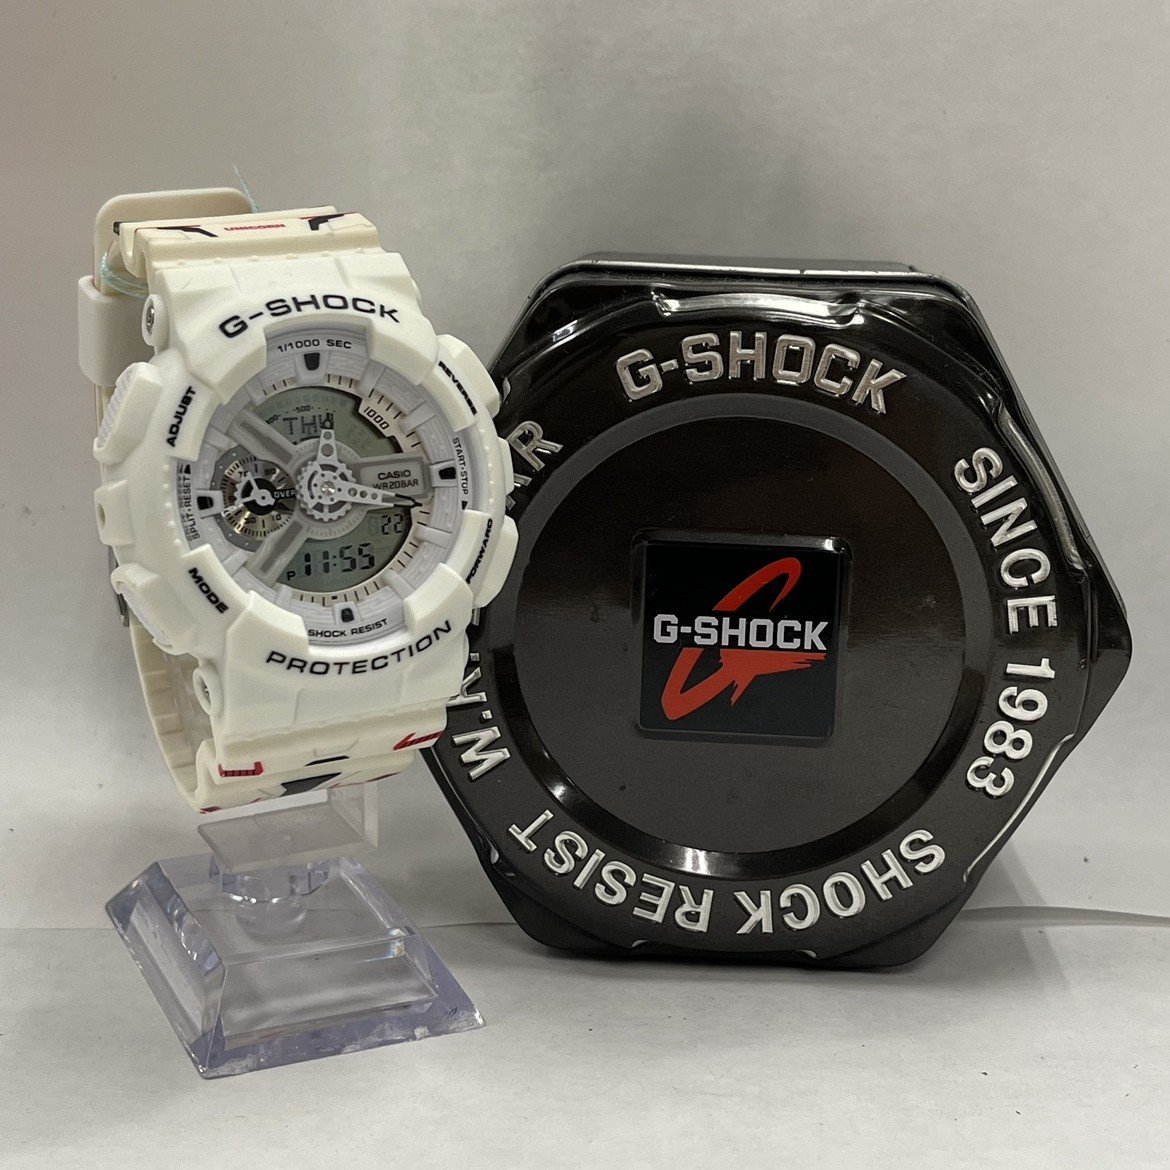 『中古品』G-SHOCK GA-110MW-7APRGD 腕時計 ガンダム40周年記念モデル 機動戦士ガンダムユニコーン クォーツ_画像1